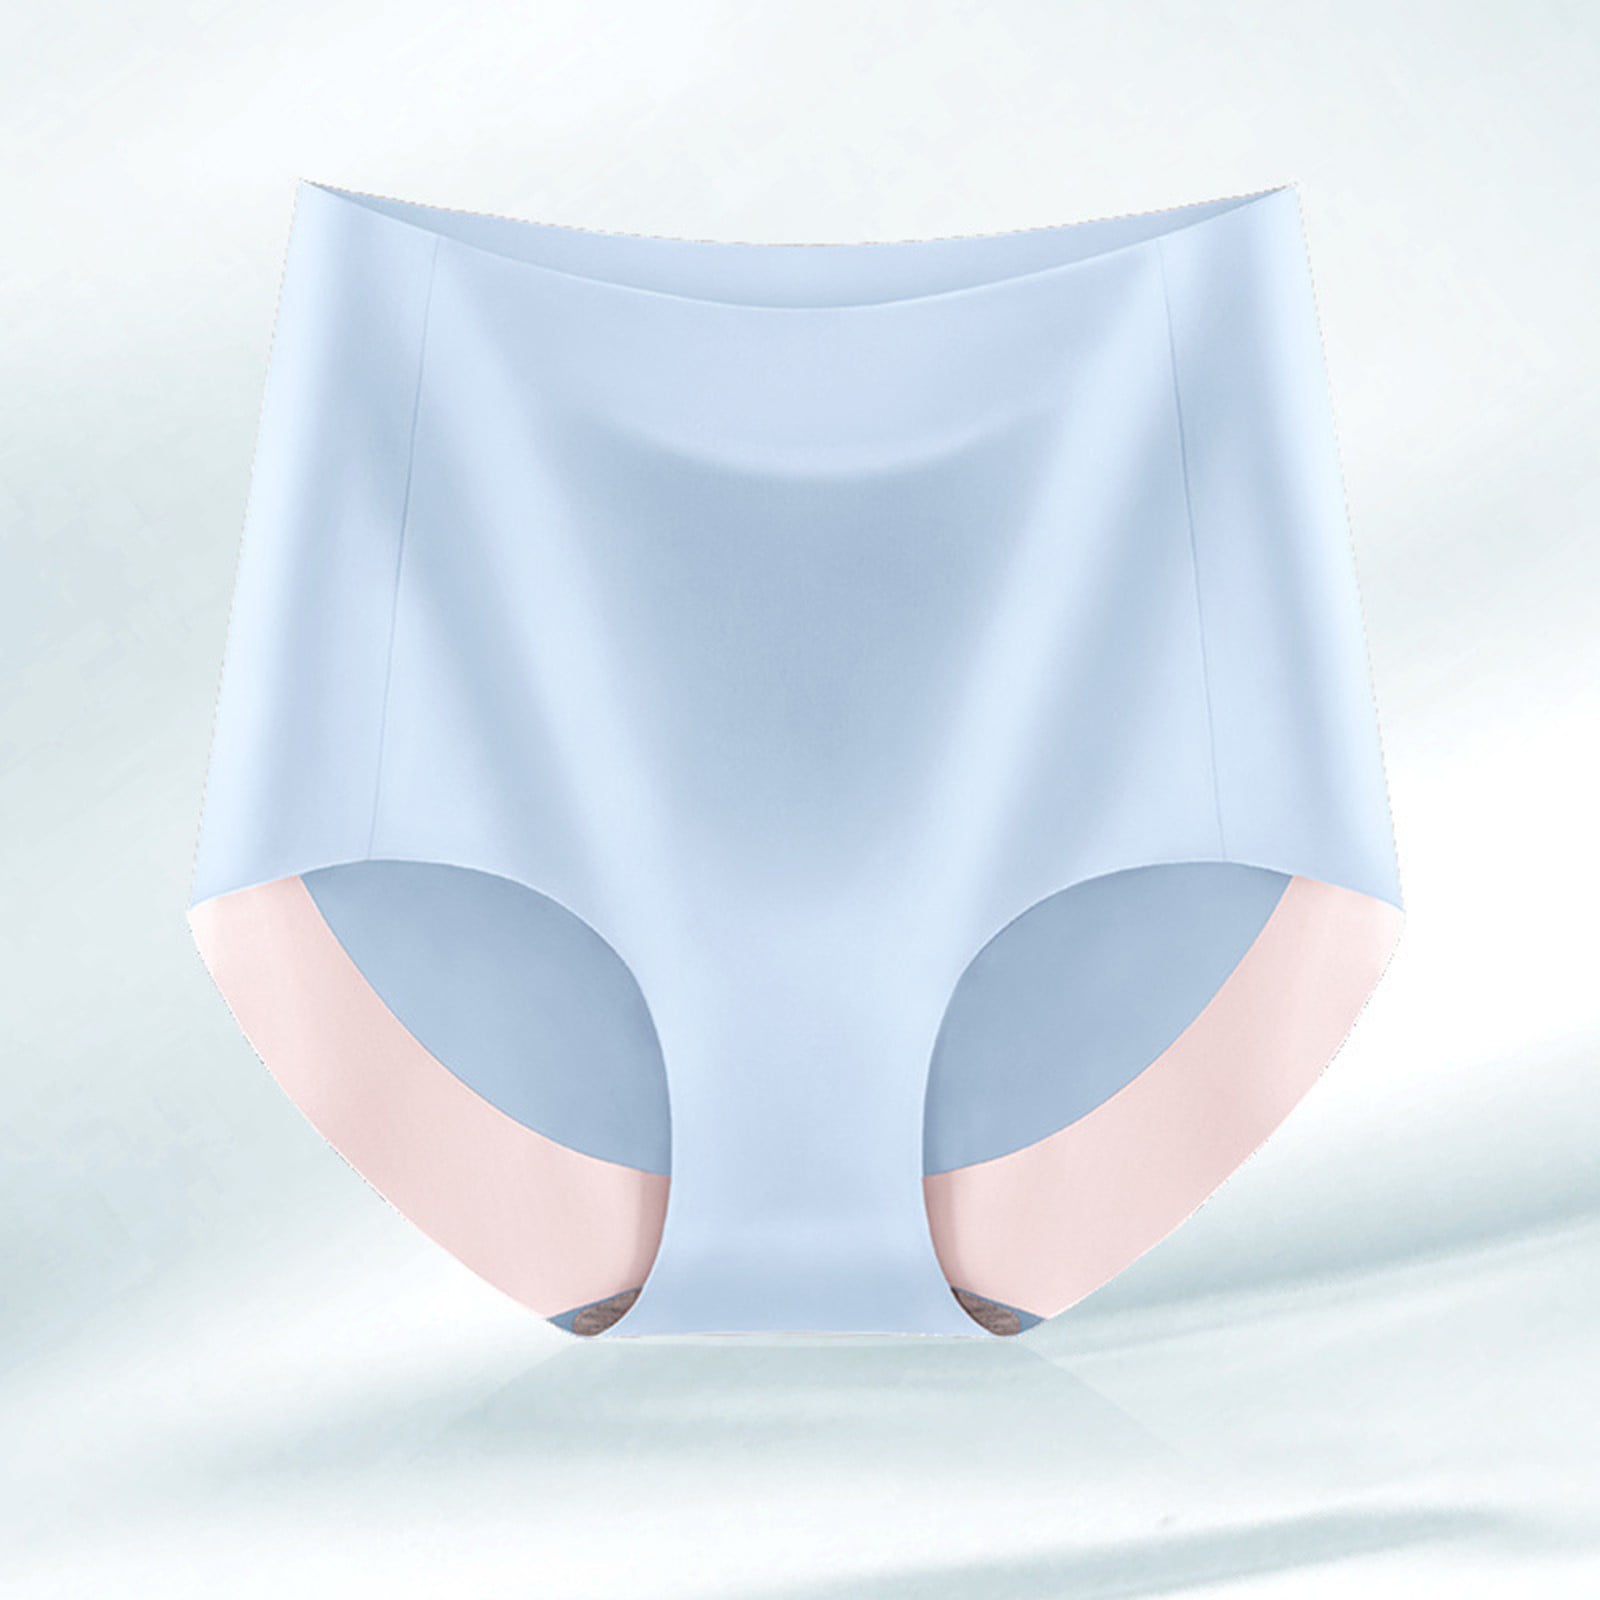 GWAABD Elastic Free Underwear Women Cotton Underwear High Waist Briefs Soft  Underpants Breathable Ladies Panties